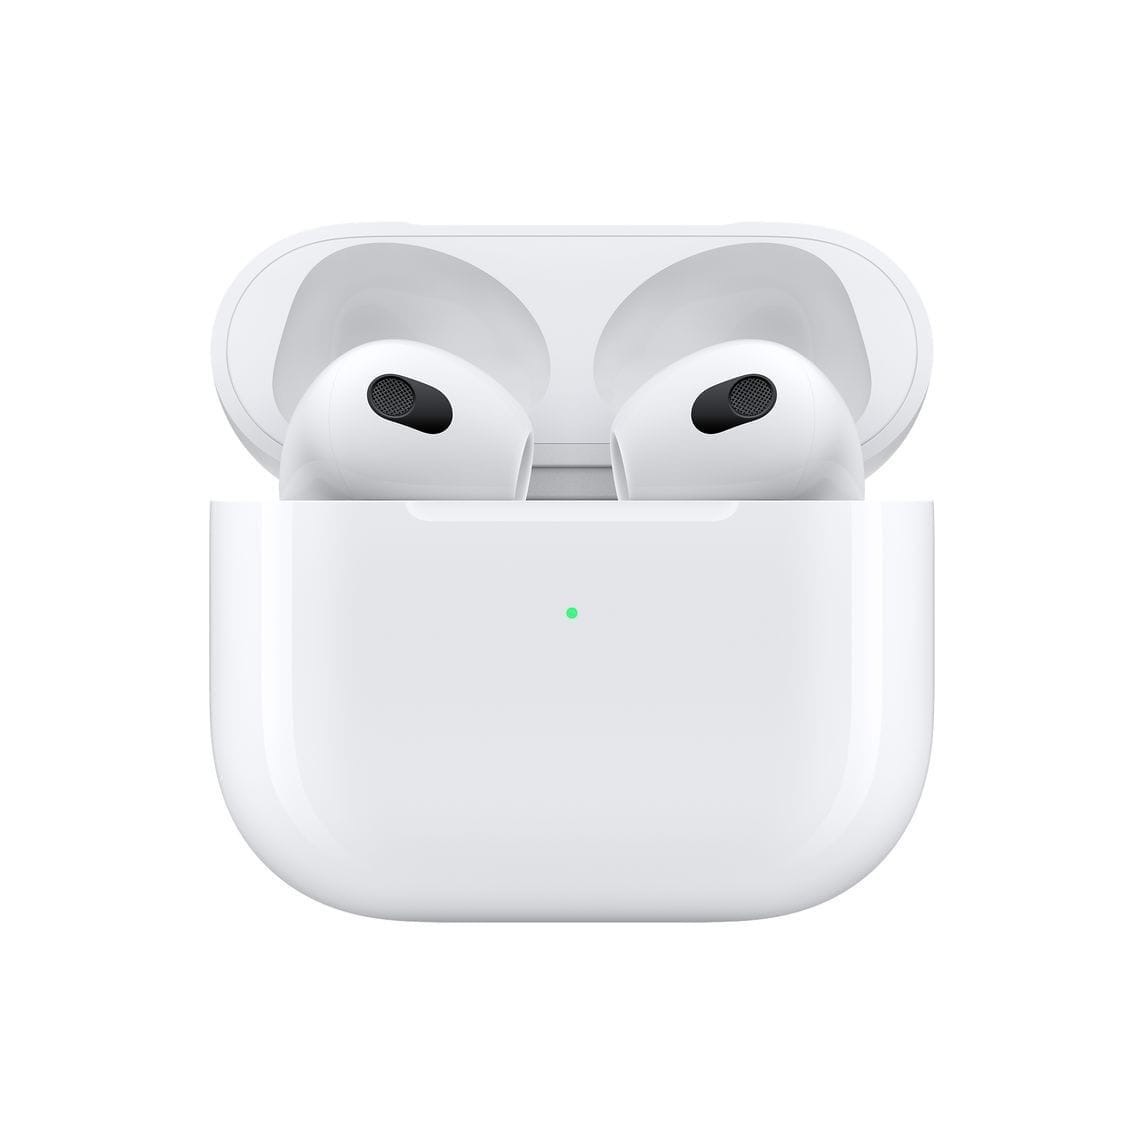 Apple в рамках своей презентации представила третье поколение наушников AirPods с новым динамиком, более глубокими басами, поддержкой «пространственного аудио» и объёмного звука Dolby Atmos, но без активного шумоподавления.